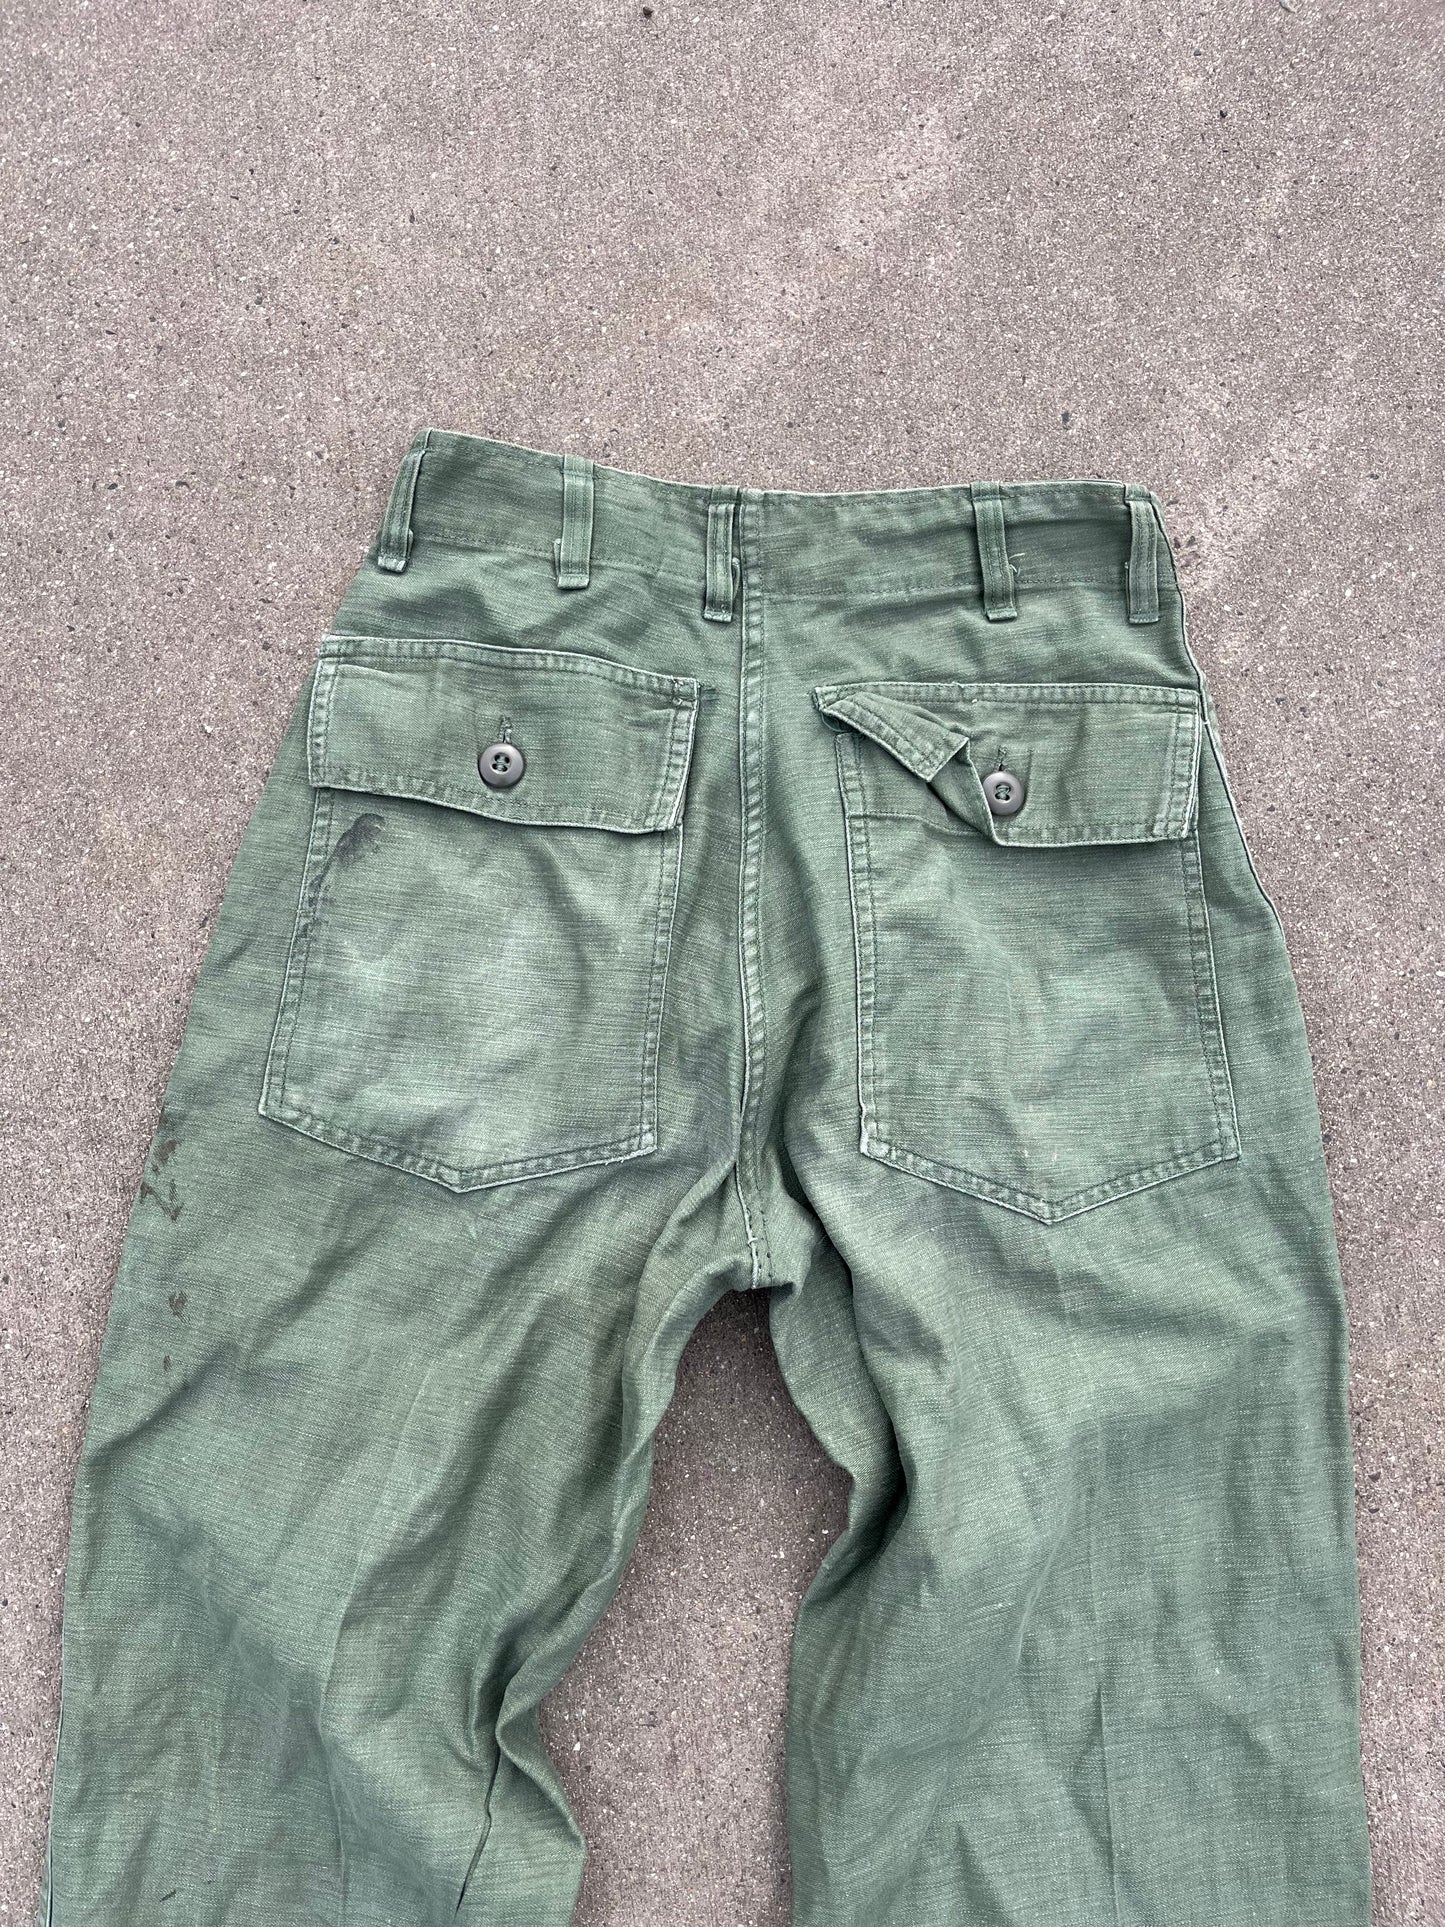 OG 107 US Army pants